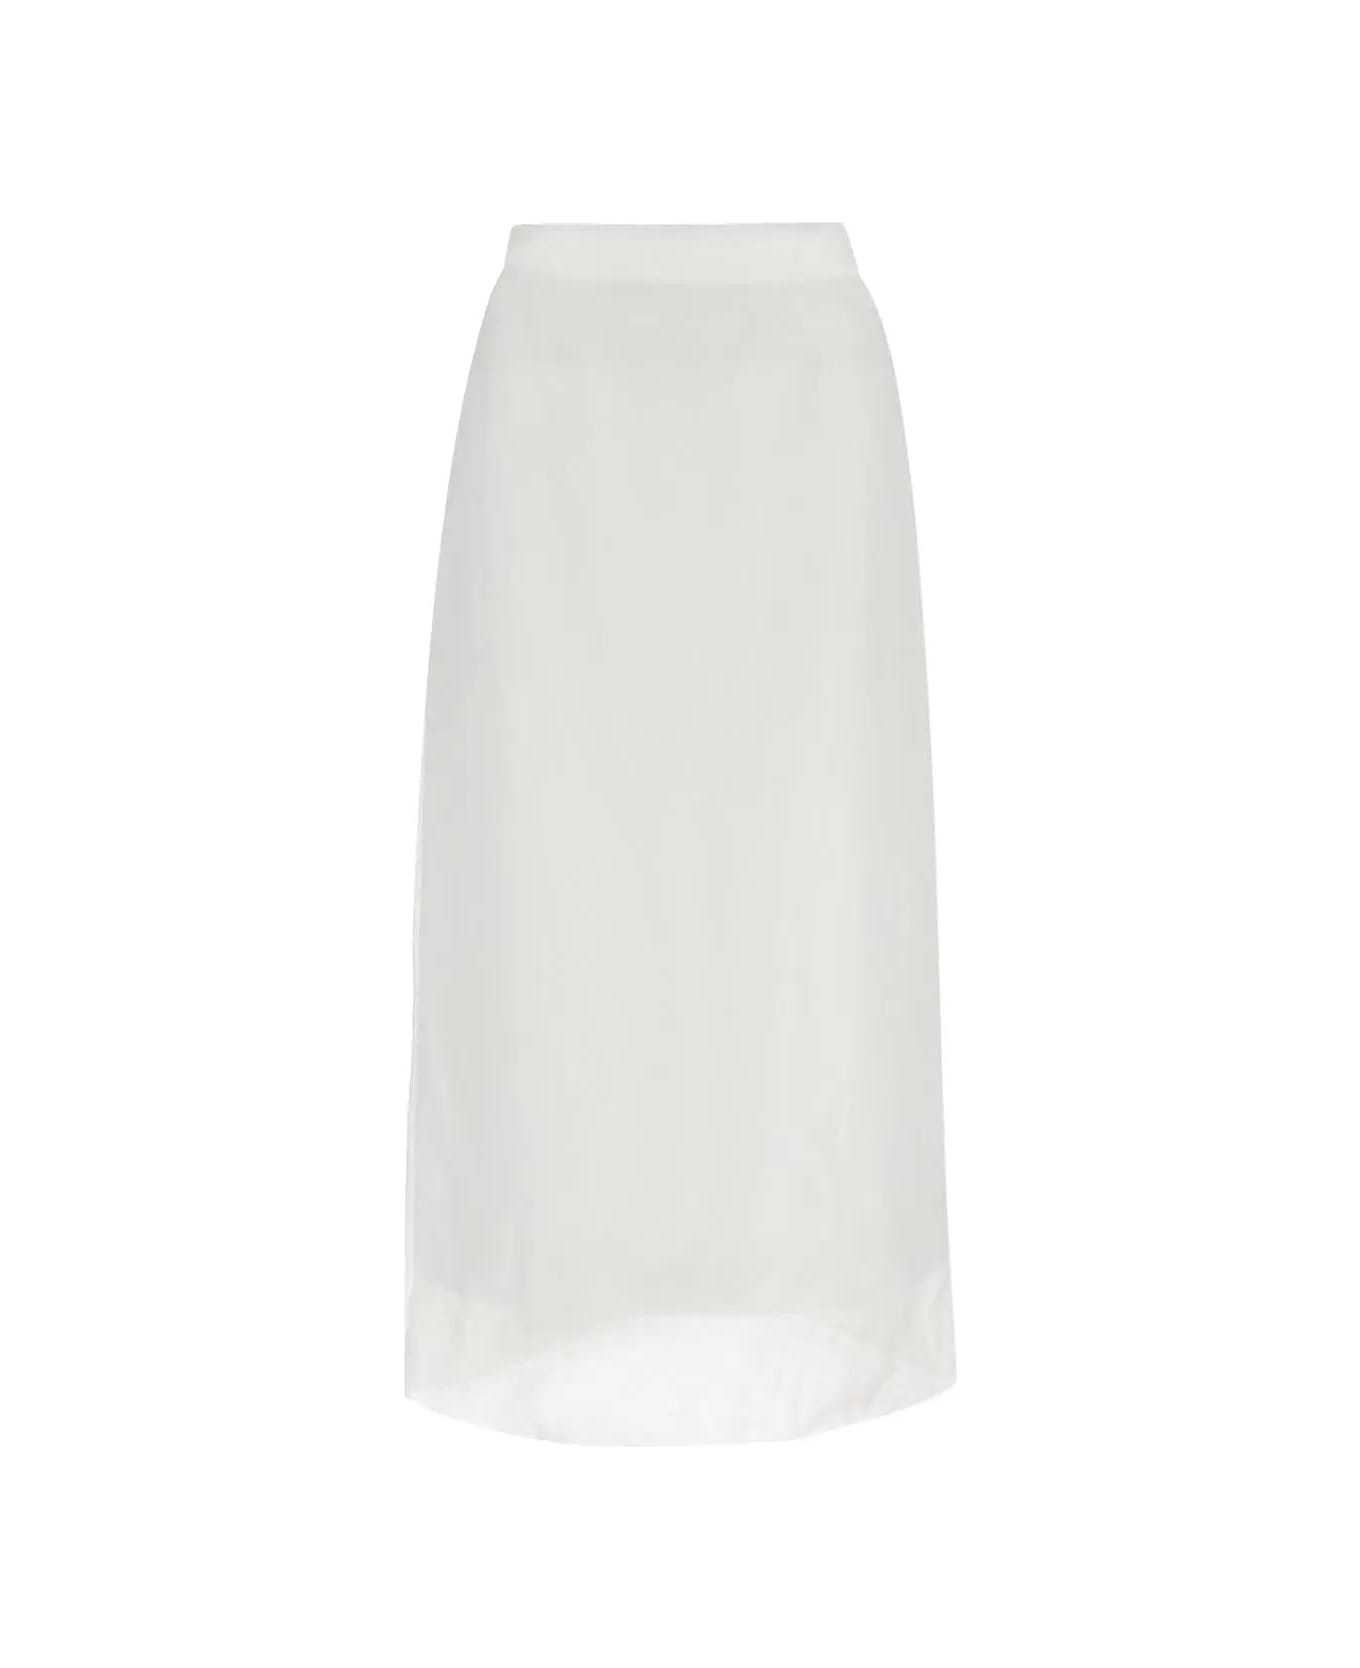 SportMax Aceti Skirt - White スカート